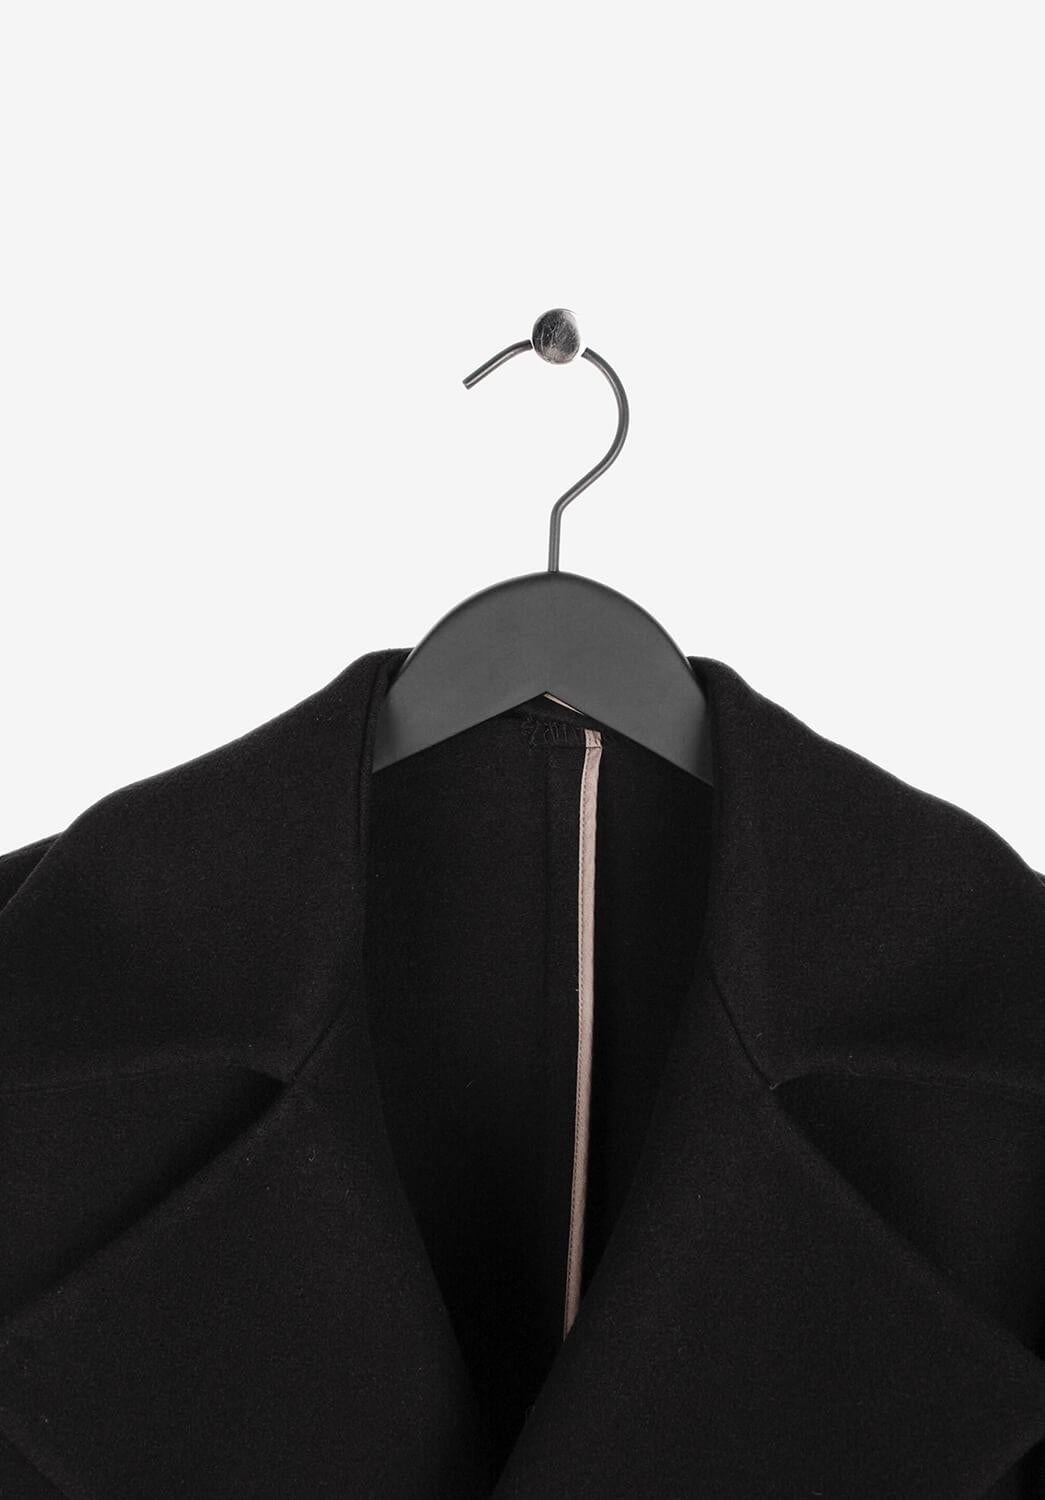 Zu verkaufen ist ein 100% echter Berluti Wool Peacoat
Farbe: Schwarz
(Eine tatsächliche Farbe kann ein wenig variieren aufgrund individueller Computer-Bildschirm Interpretation)
MATERIAL: 100% Wolle
Tag Größe: 52R (läuft Medium/Slim L)
Diese Jacke